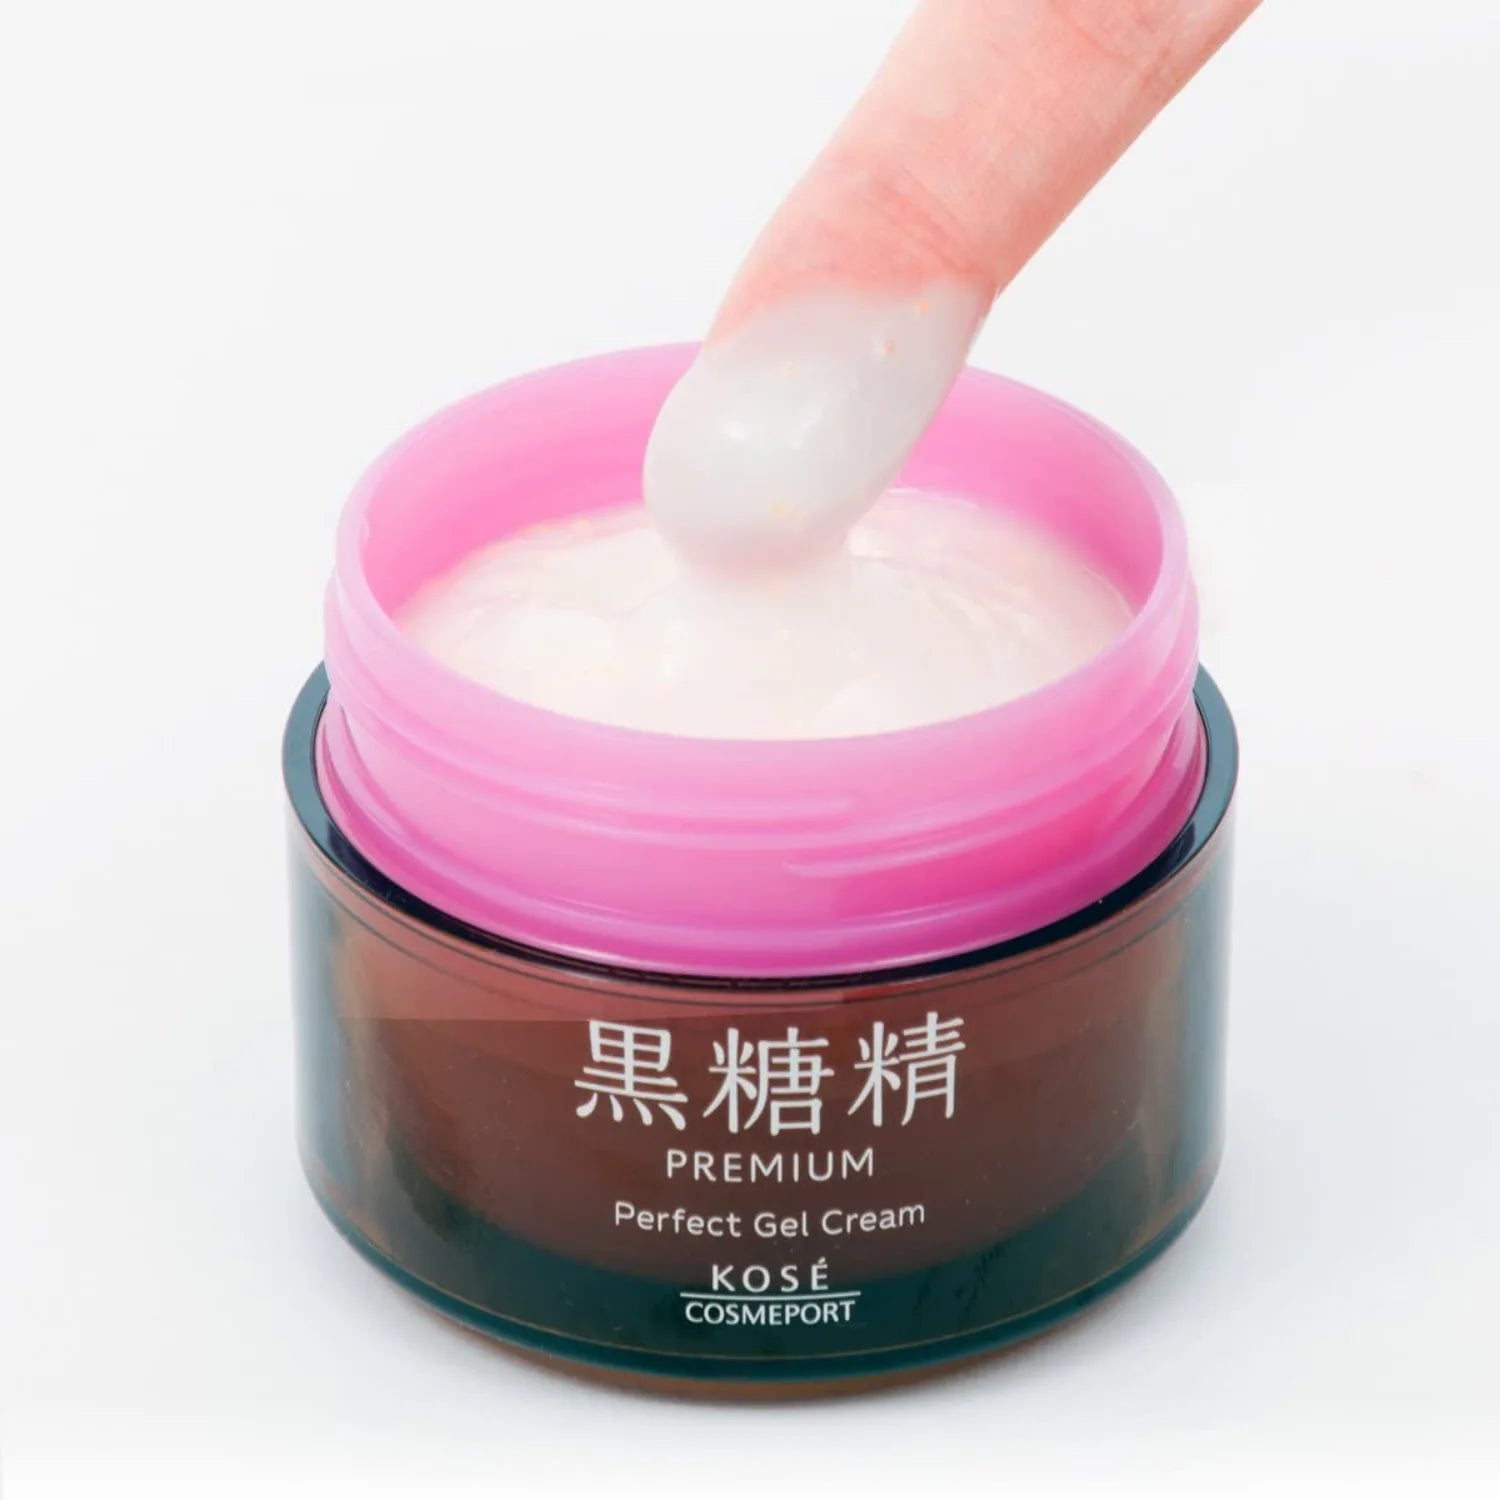 Kose Kokutosei Premium Perfect Gel Cream 100g - Buy Me Japan